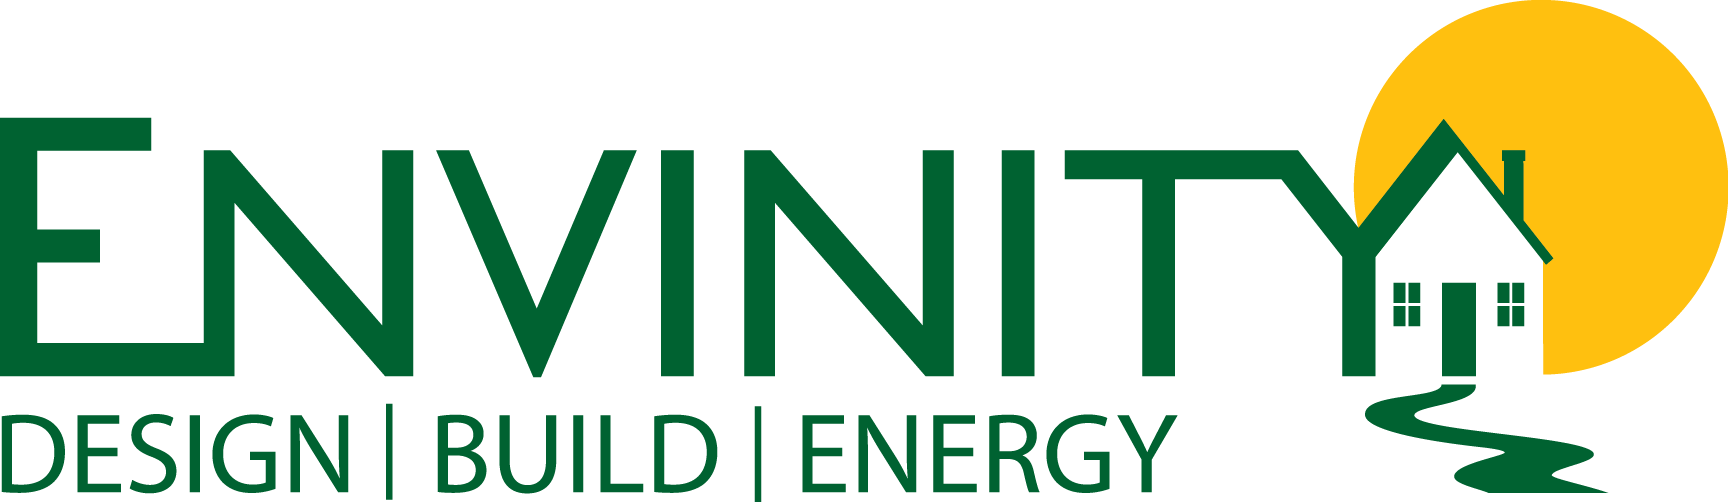 Envinity, Inc company logo